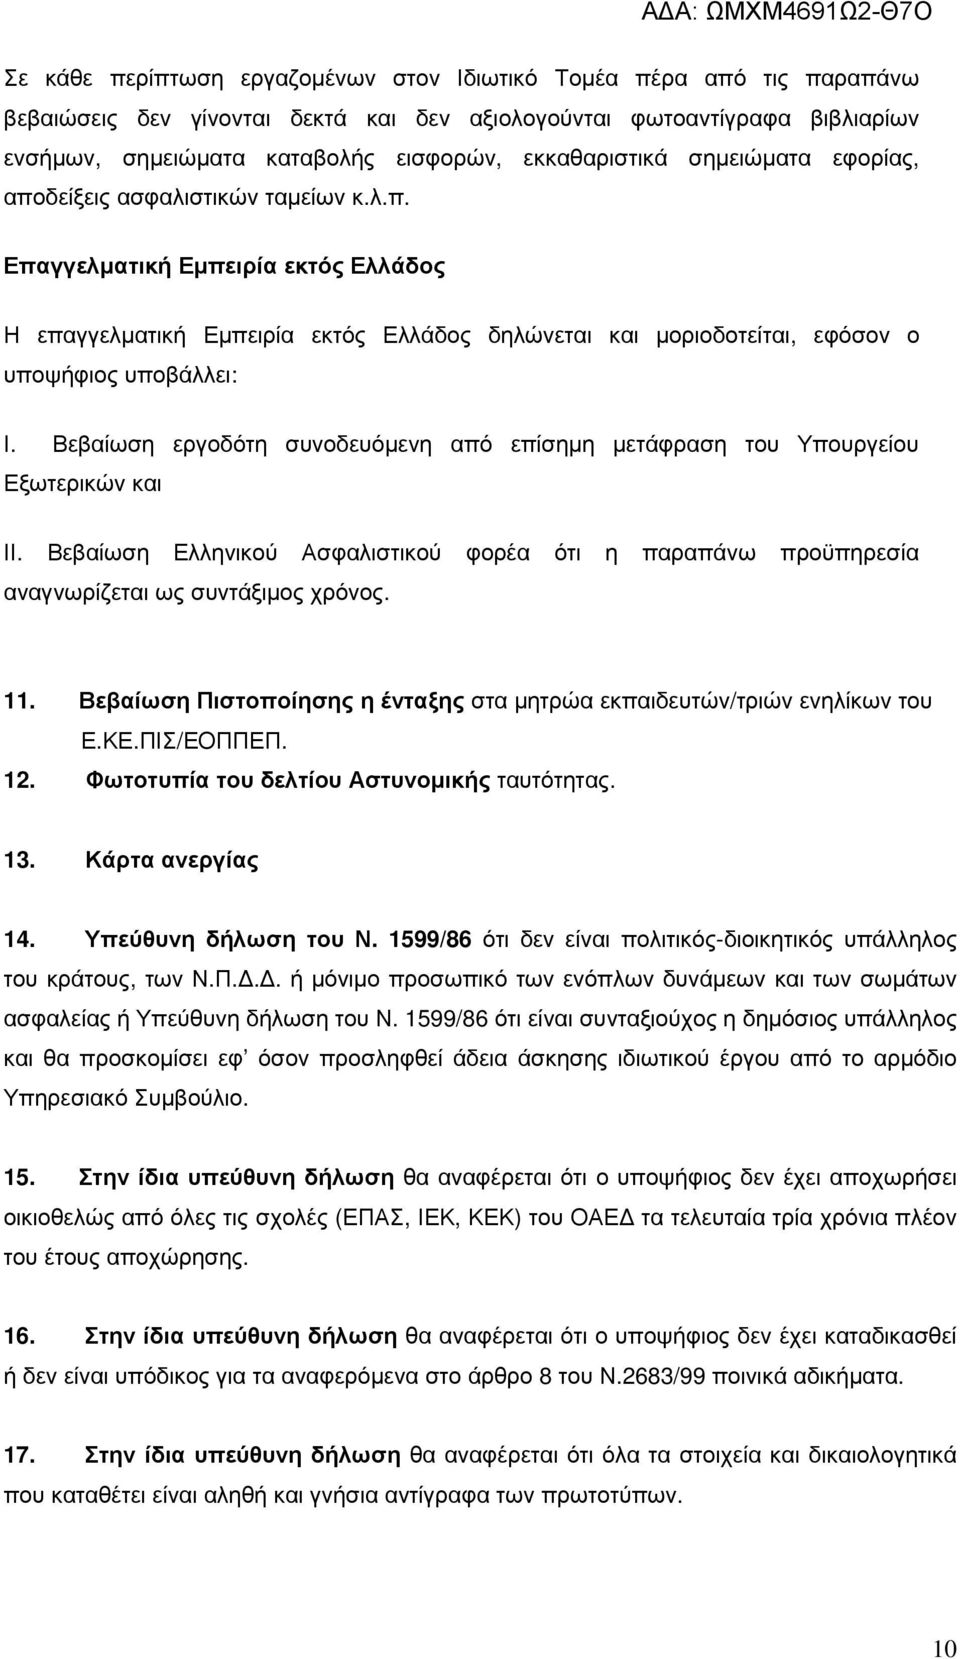 Βεβαίωση εργοδότη συνοδευόµενη από επίσηµη µετάφραση του Υπουργείου Εξωτερικών και ΙΙ. Βεβαίωση Ελληνικού Ασφαλιστικού φορέα ότι η παραπάνω προϋπηρεσία αναγνωρίζεται ως συντάξιµος χρόνος. 11.